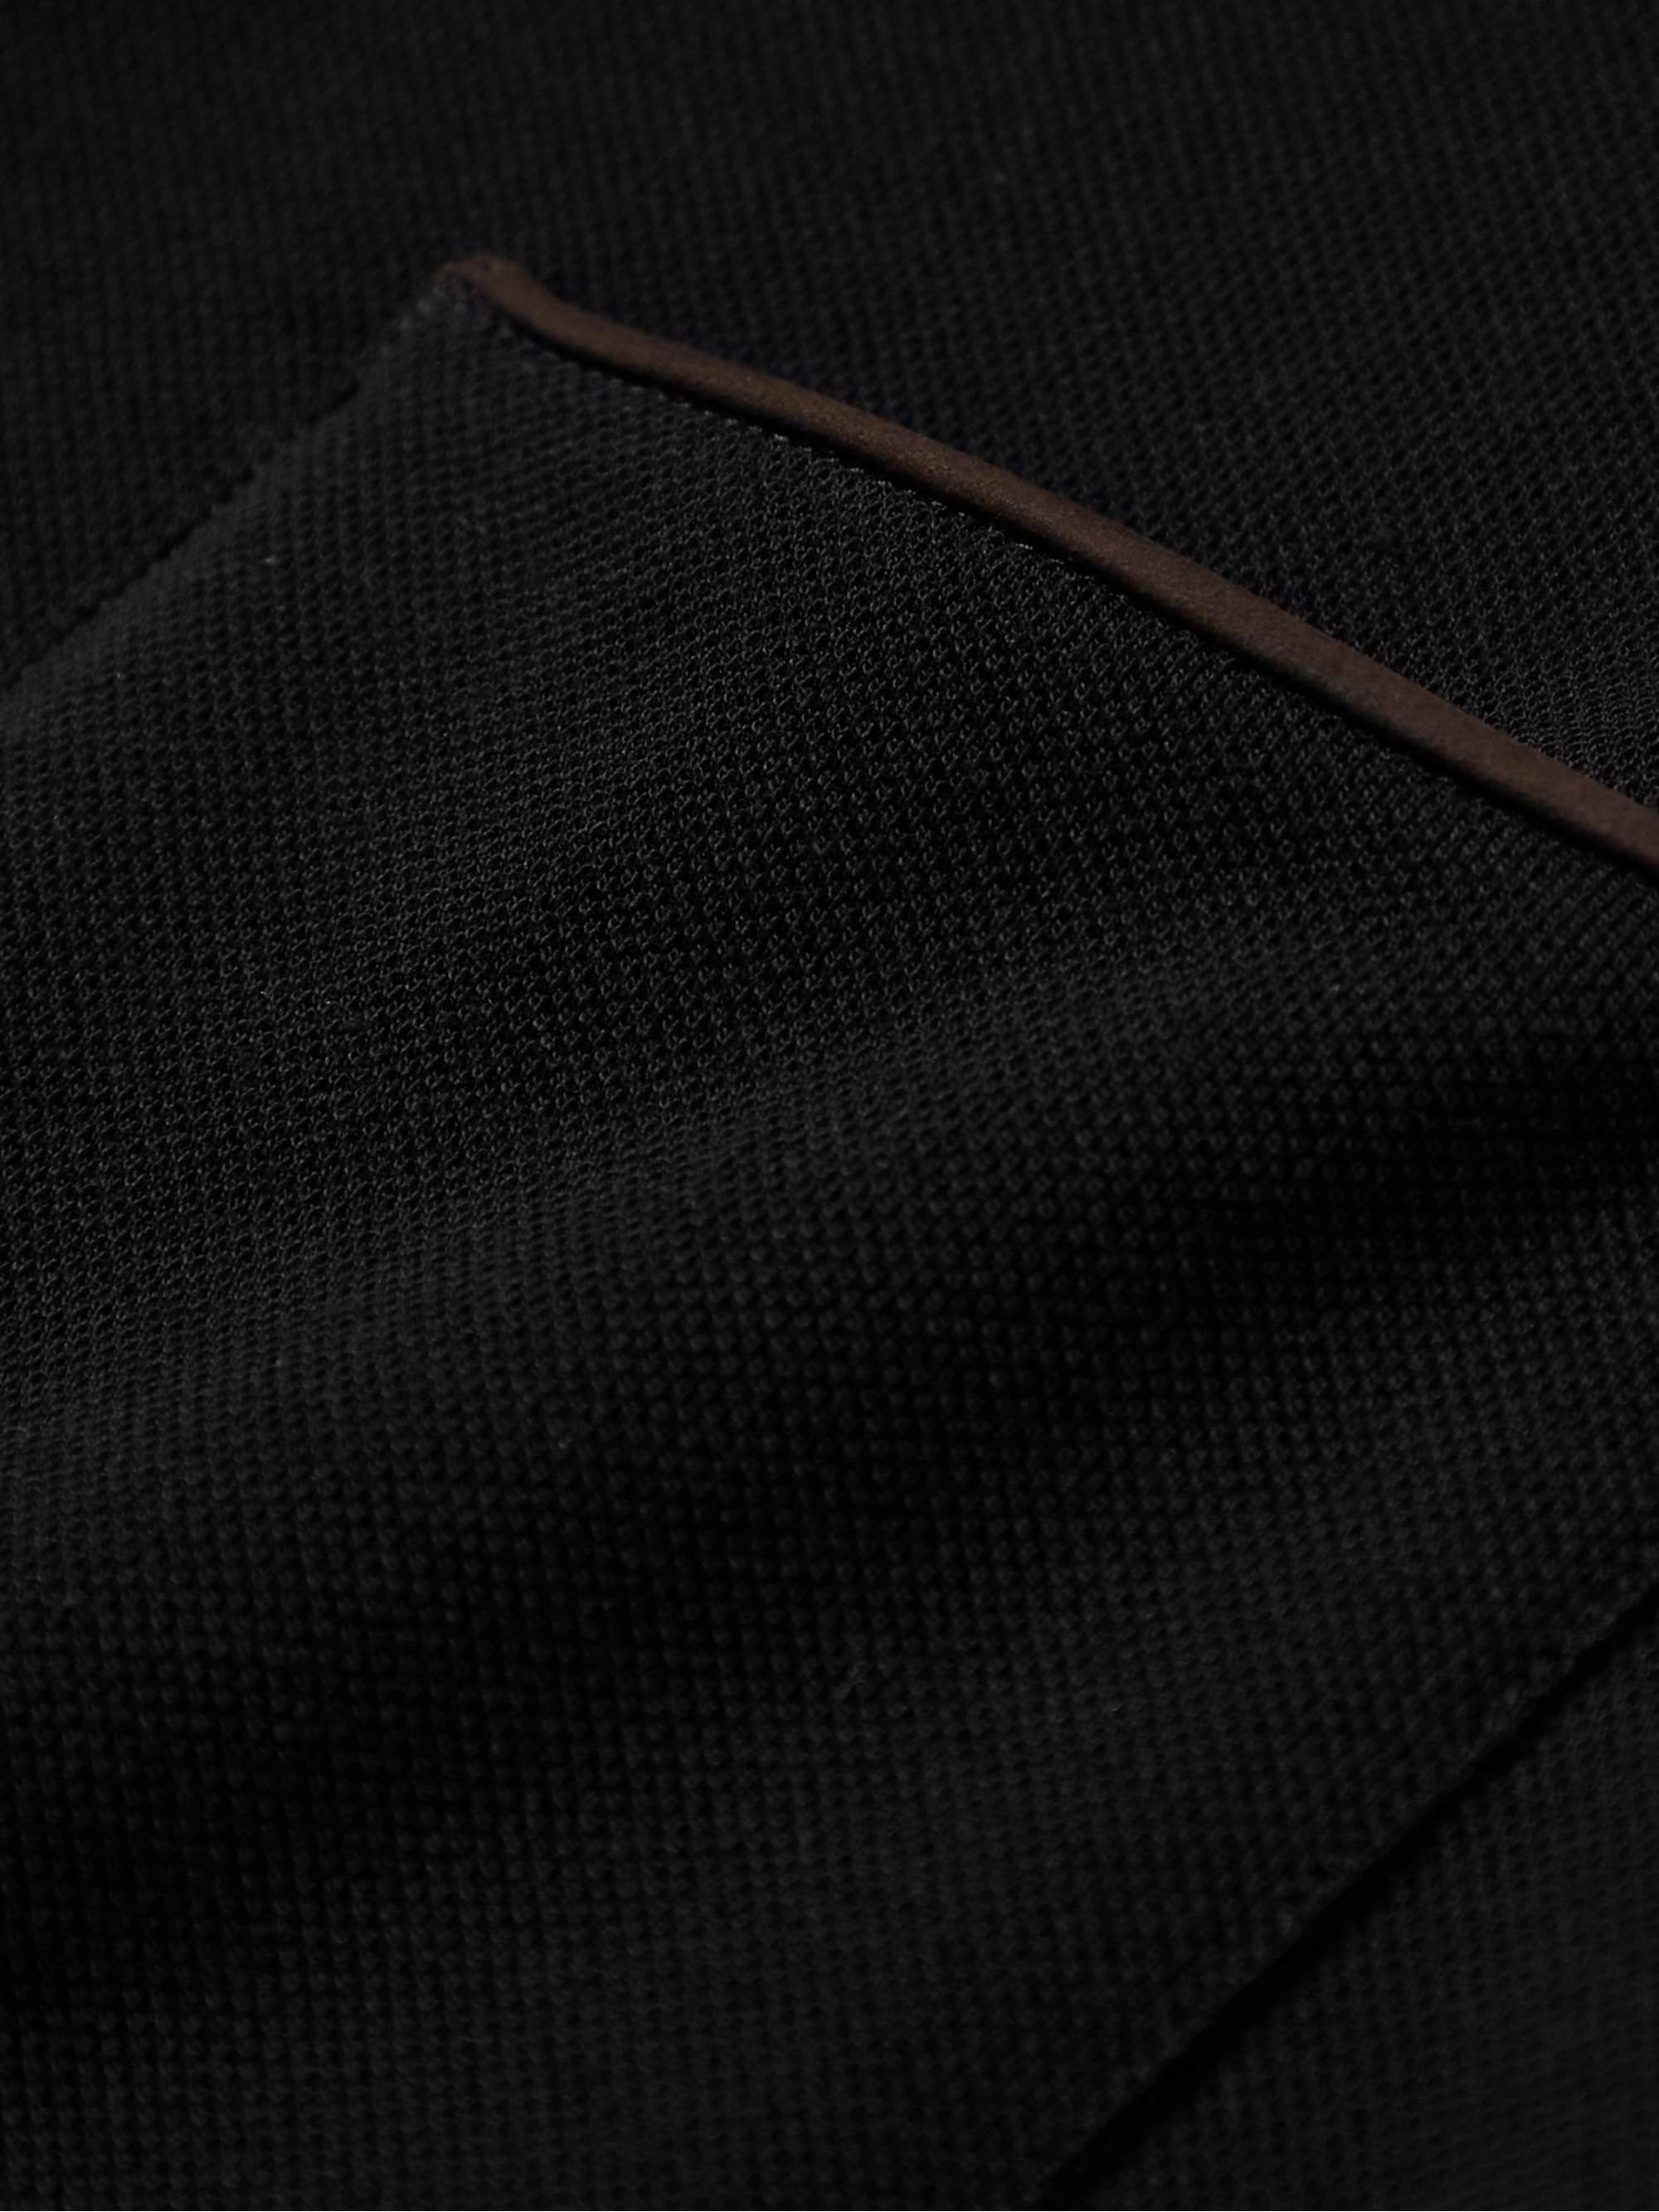 ZEGNA Leather-Trimmed Cotton-Piqué Polo Shirt